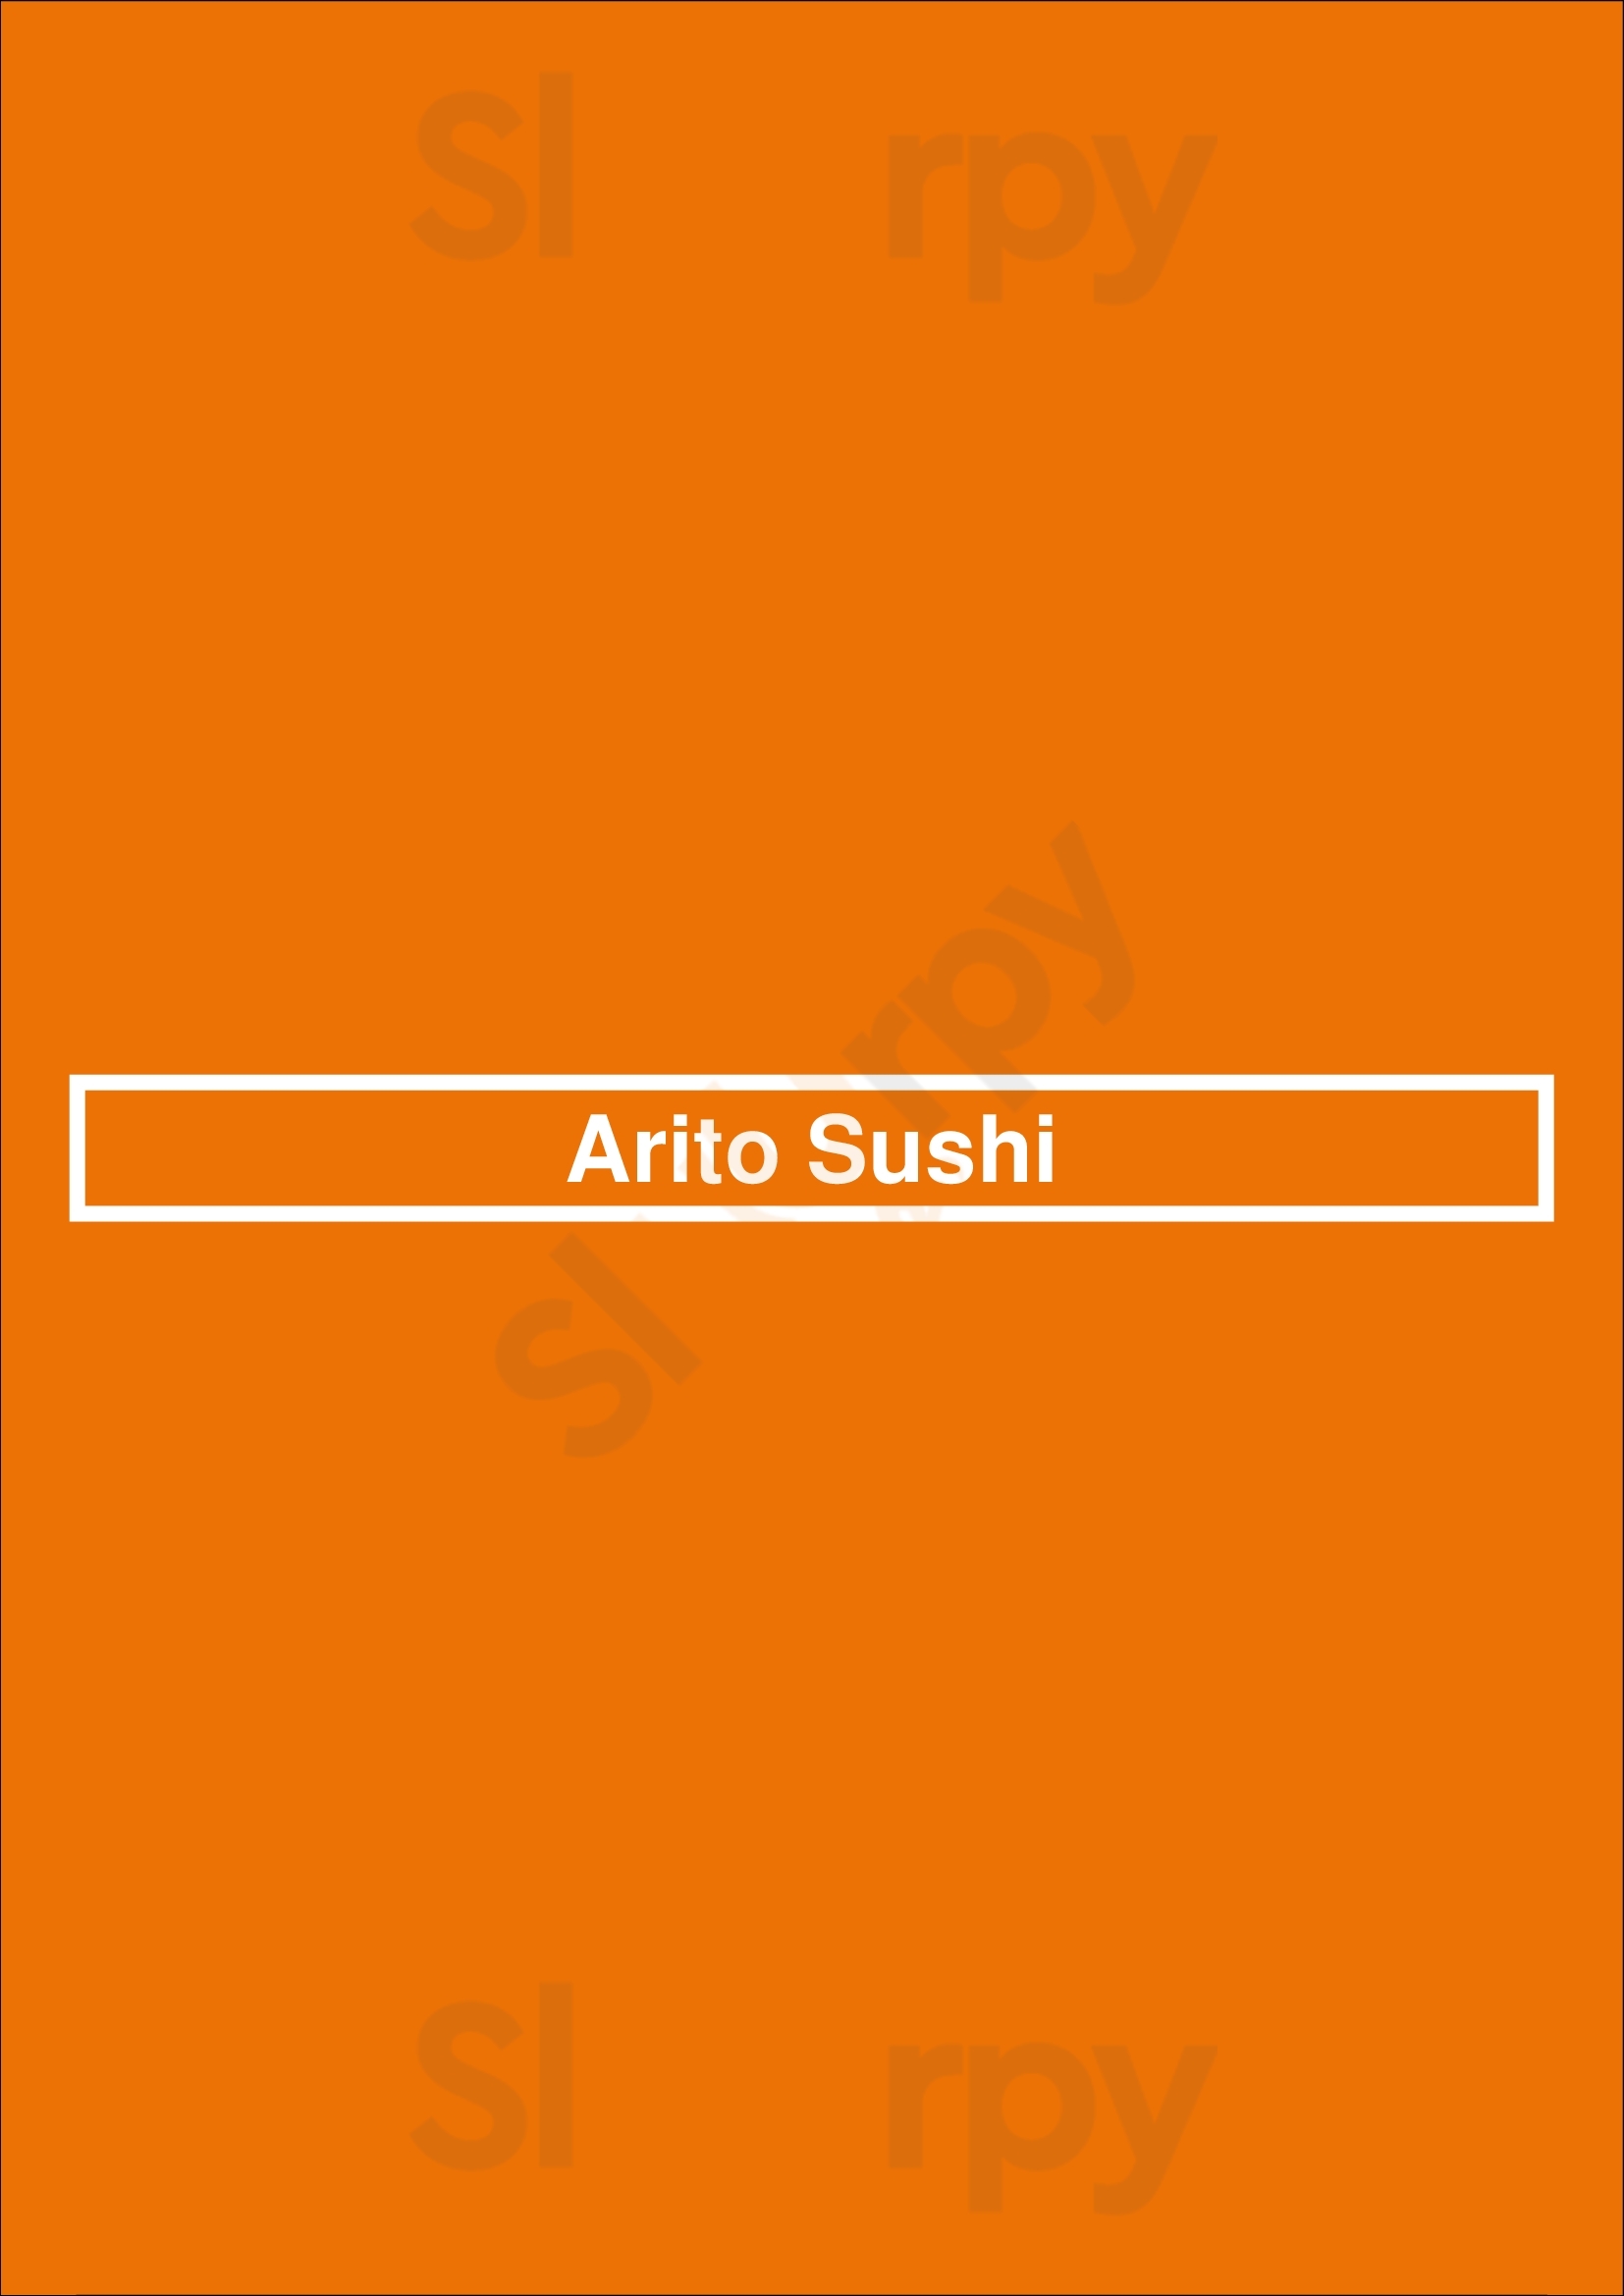 Arito Sushi Nice Menu - 1